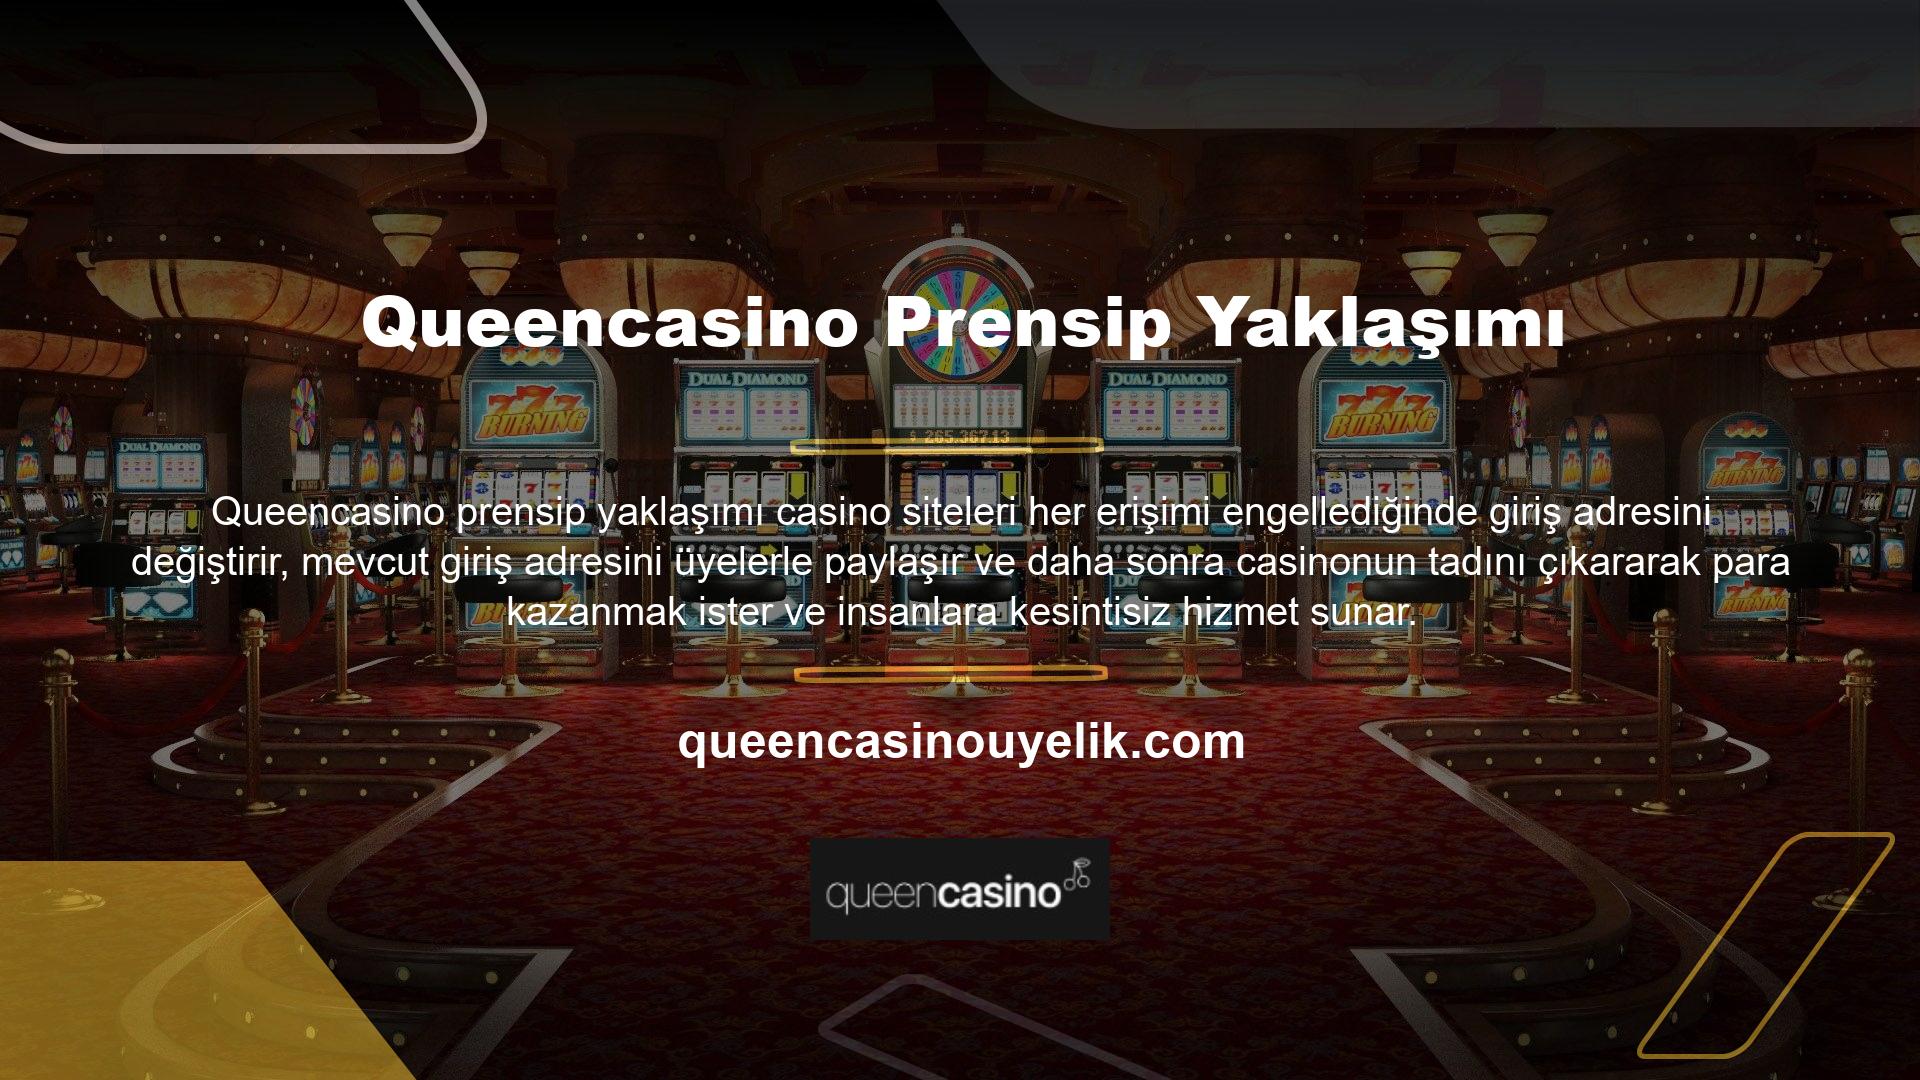 Queencasino Canlı Bahis Siteleri, sektör sorunlarını anlayan ve üyelerimize sorunsuz oyun ve bahis kapısını açan bir yönetim anlayışı benimseyen, uzun yıllara dayanan deneyime sahip profesyonellerden oluşan bir ekip tarafından yönetilmektedir